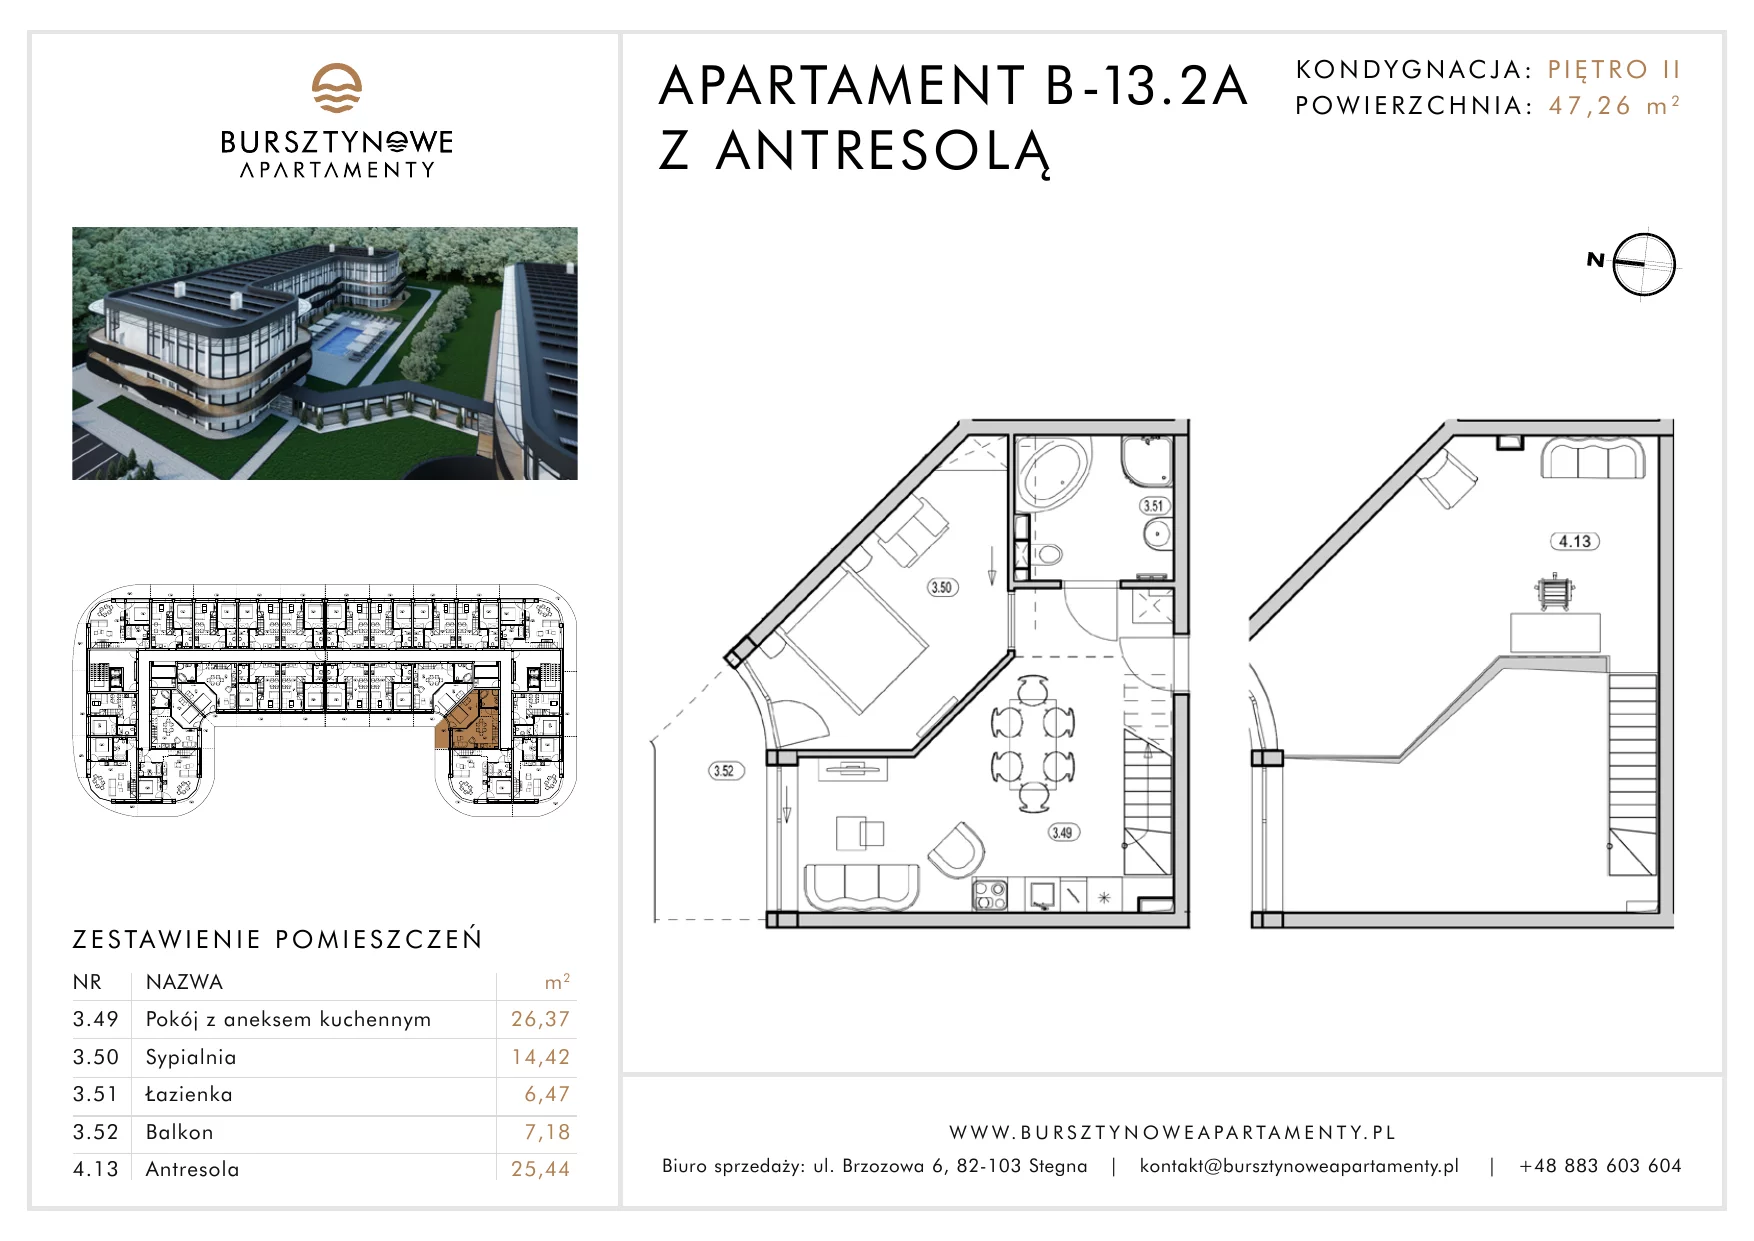 Apartament inwestycyjny 47,26 m², piętro 2, oferta nr B-13.2A, Bursztynowe Apartamenty, Stegna, ul. Brzozowa 6